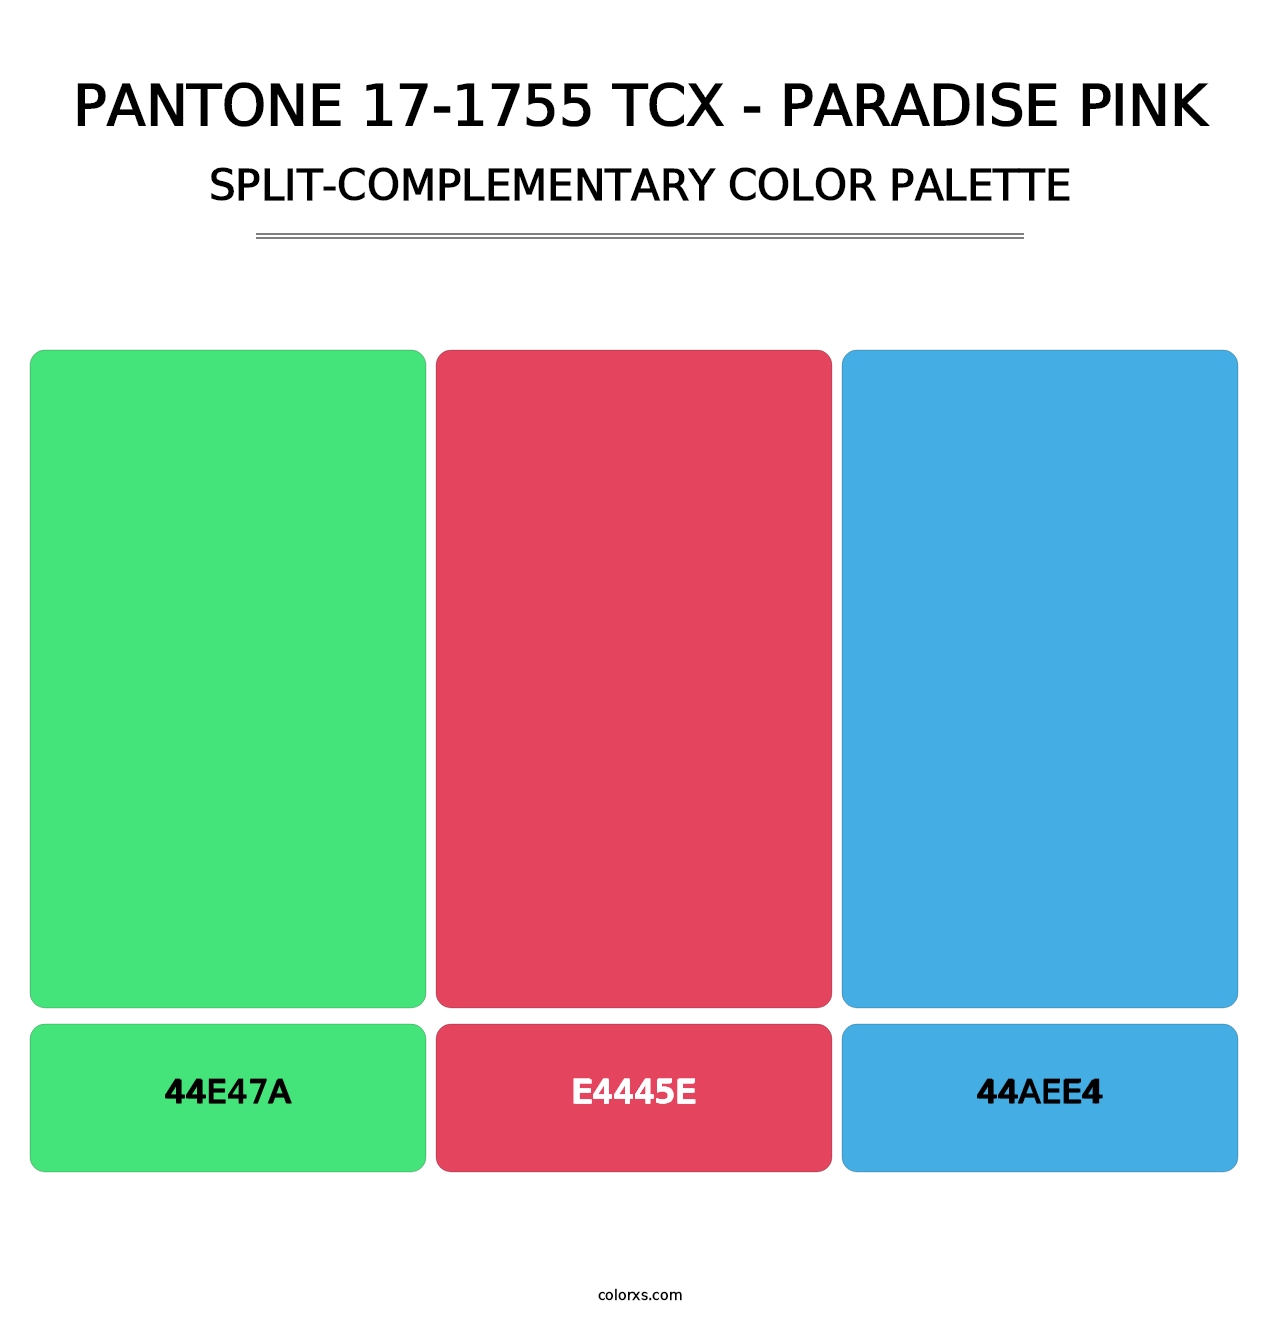 PANTONE 17-1755 TCX - Paradise Pink - Split-Complementary Color Palette